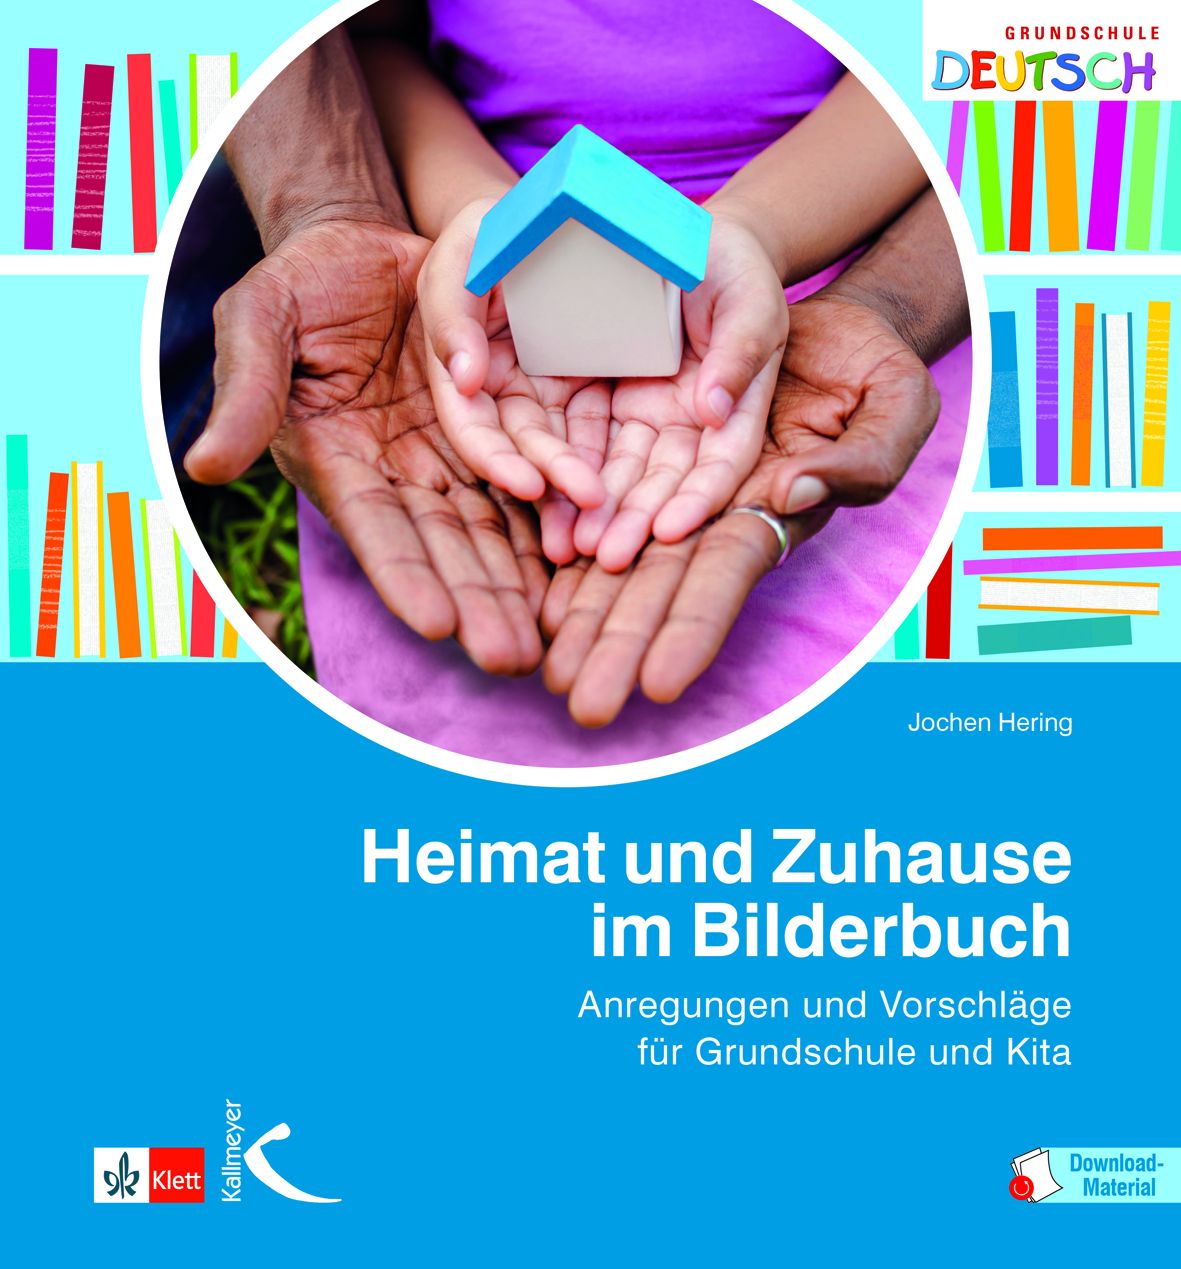 Buchcover "Heimat und Zuhause im Bilderbuch", Klett Kallmeyer